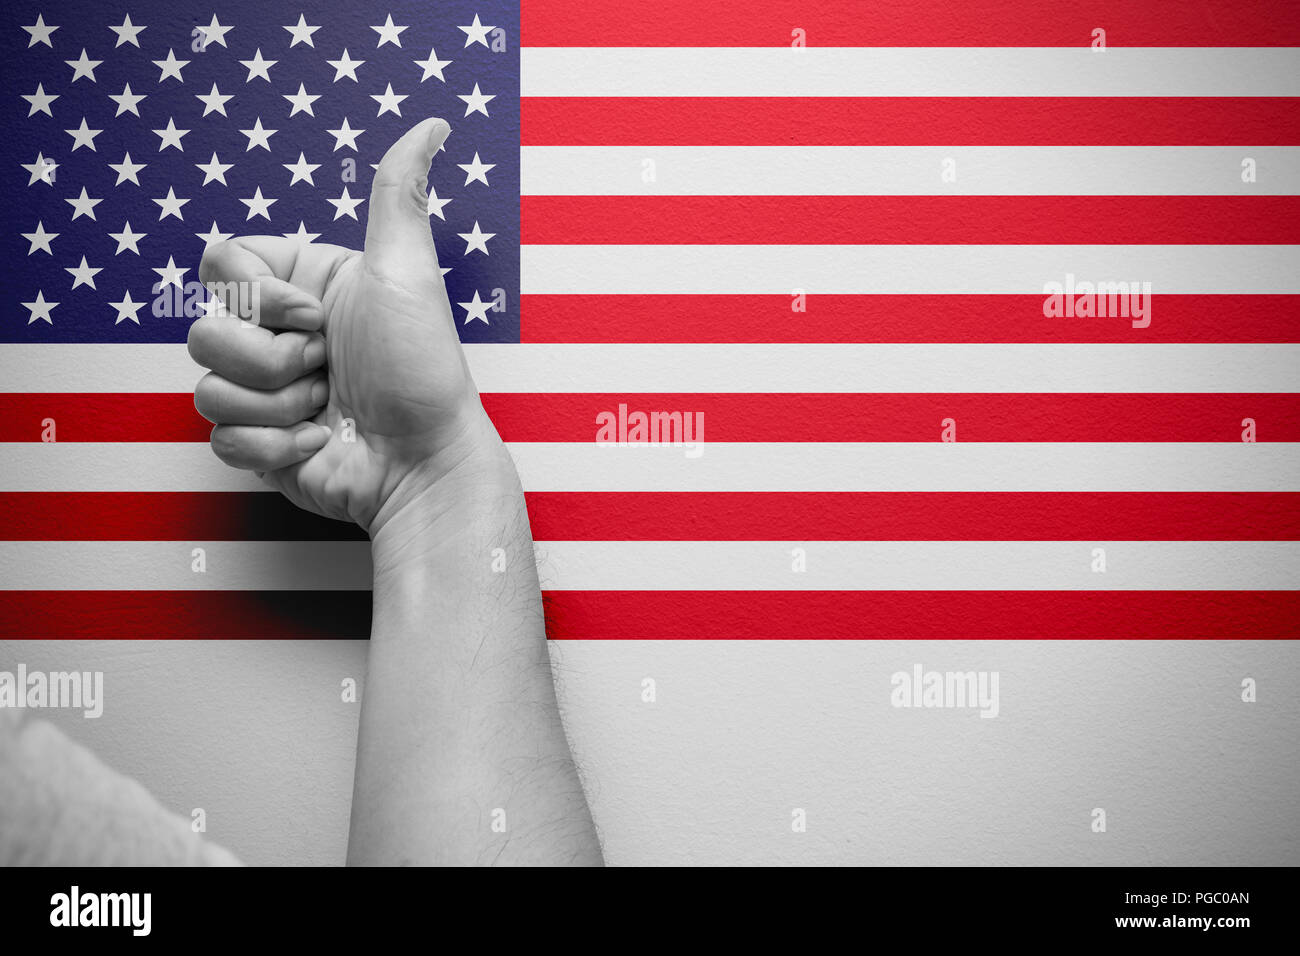 Buena latina pulgar arriba mano con fondo de la bandera americana Foto de stock